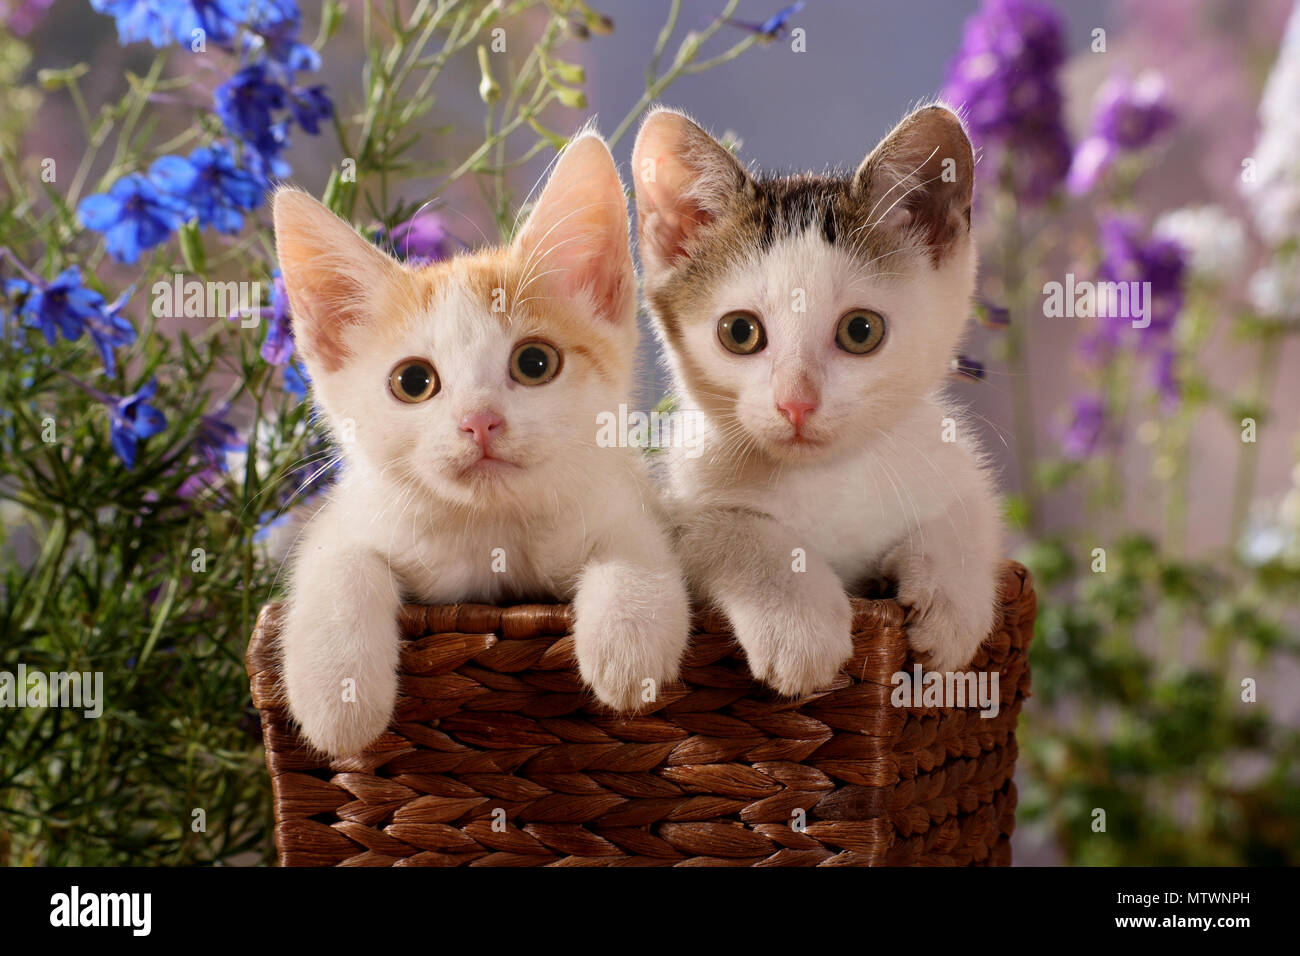 Due gattini seduti in un cestello Foto Stock